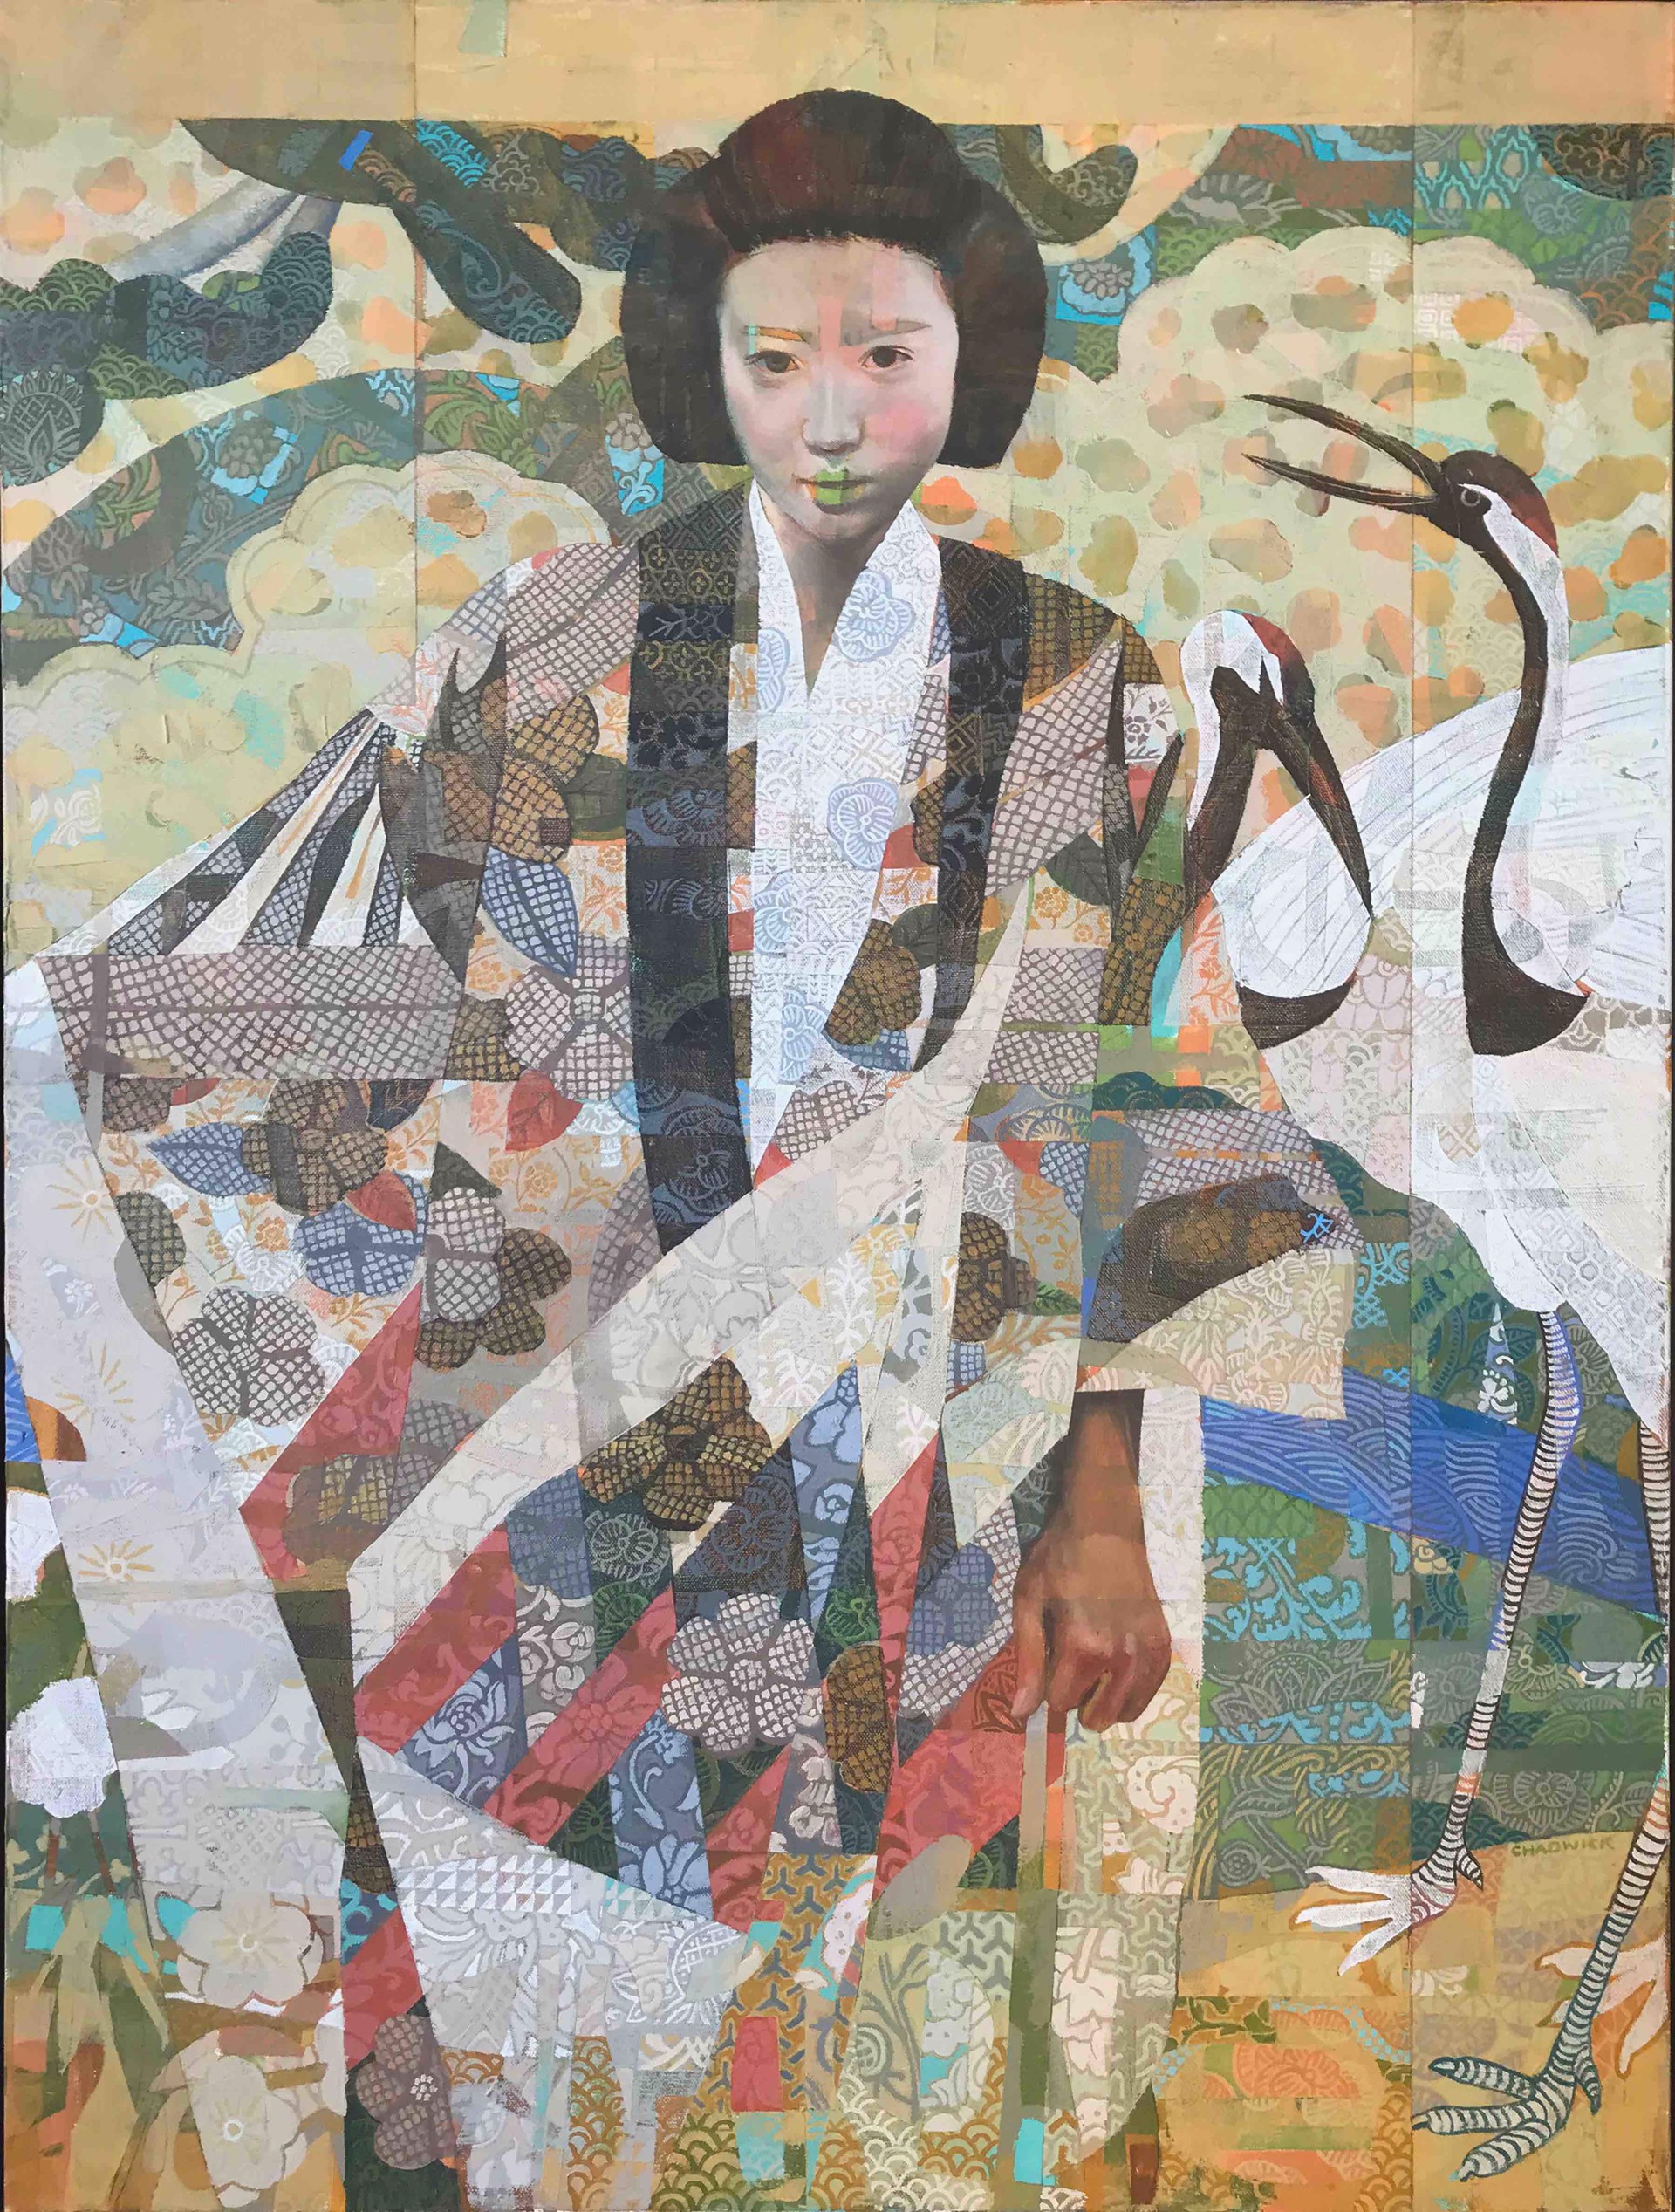 The Kimono by Kevin Chadwick